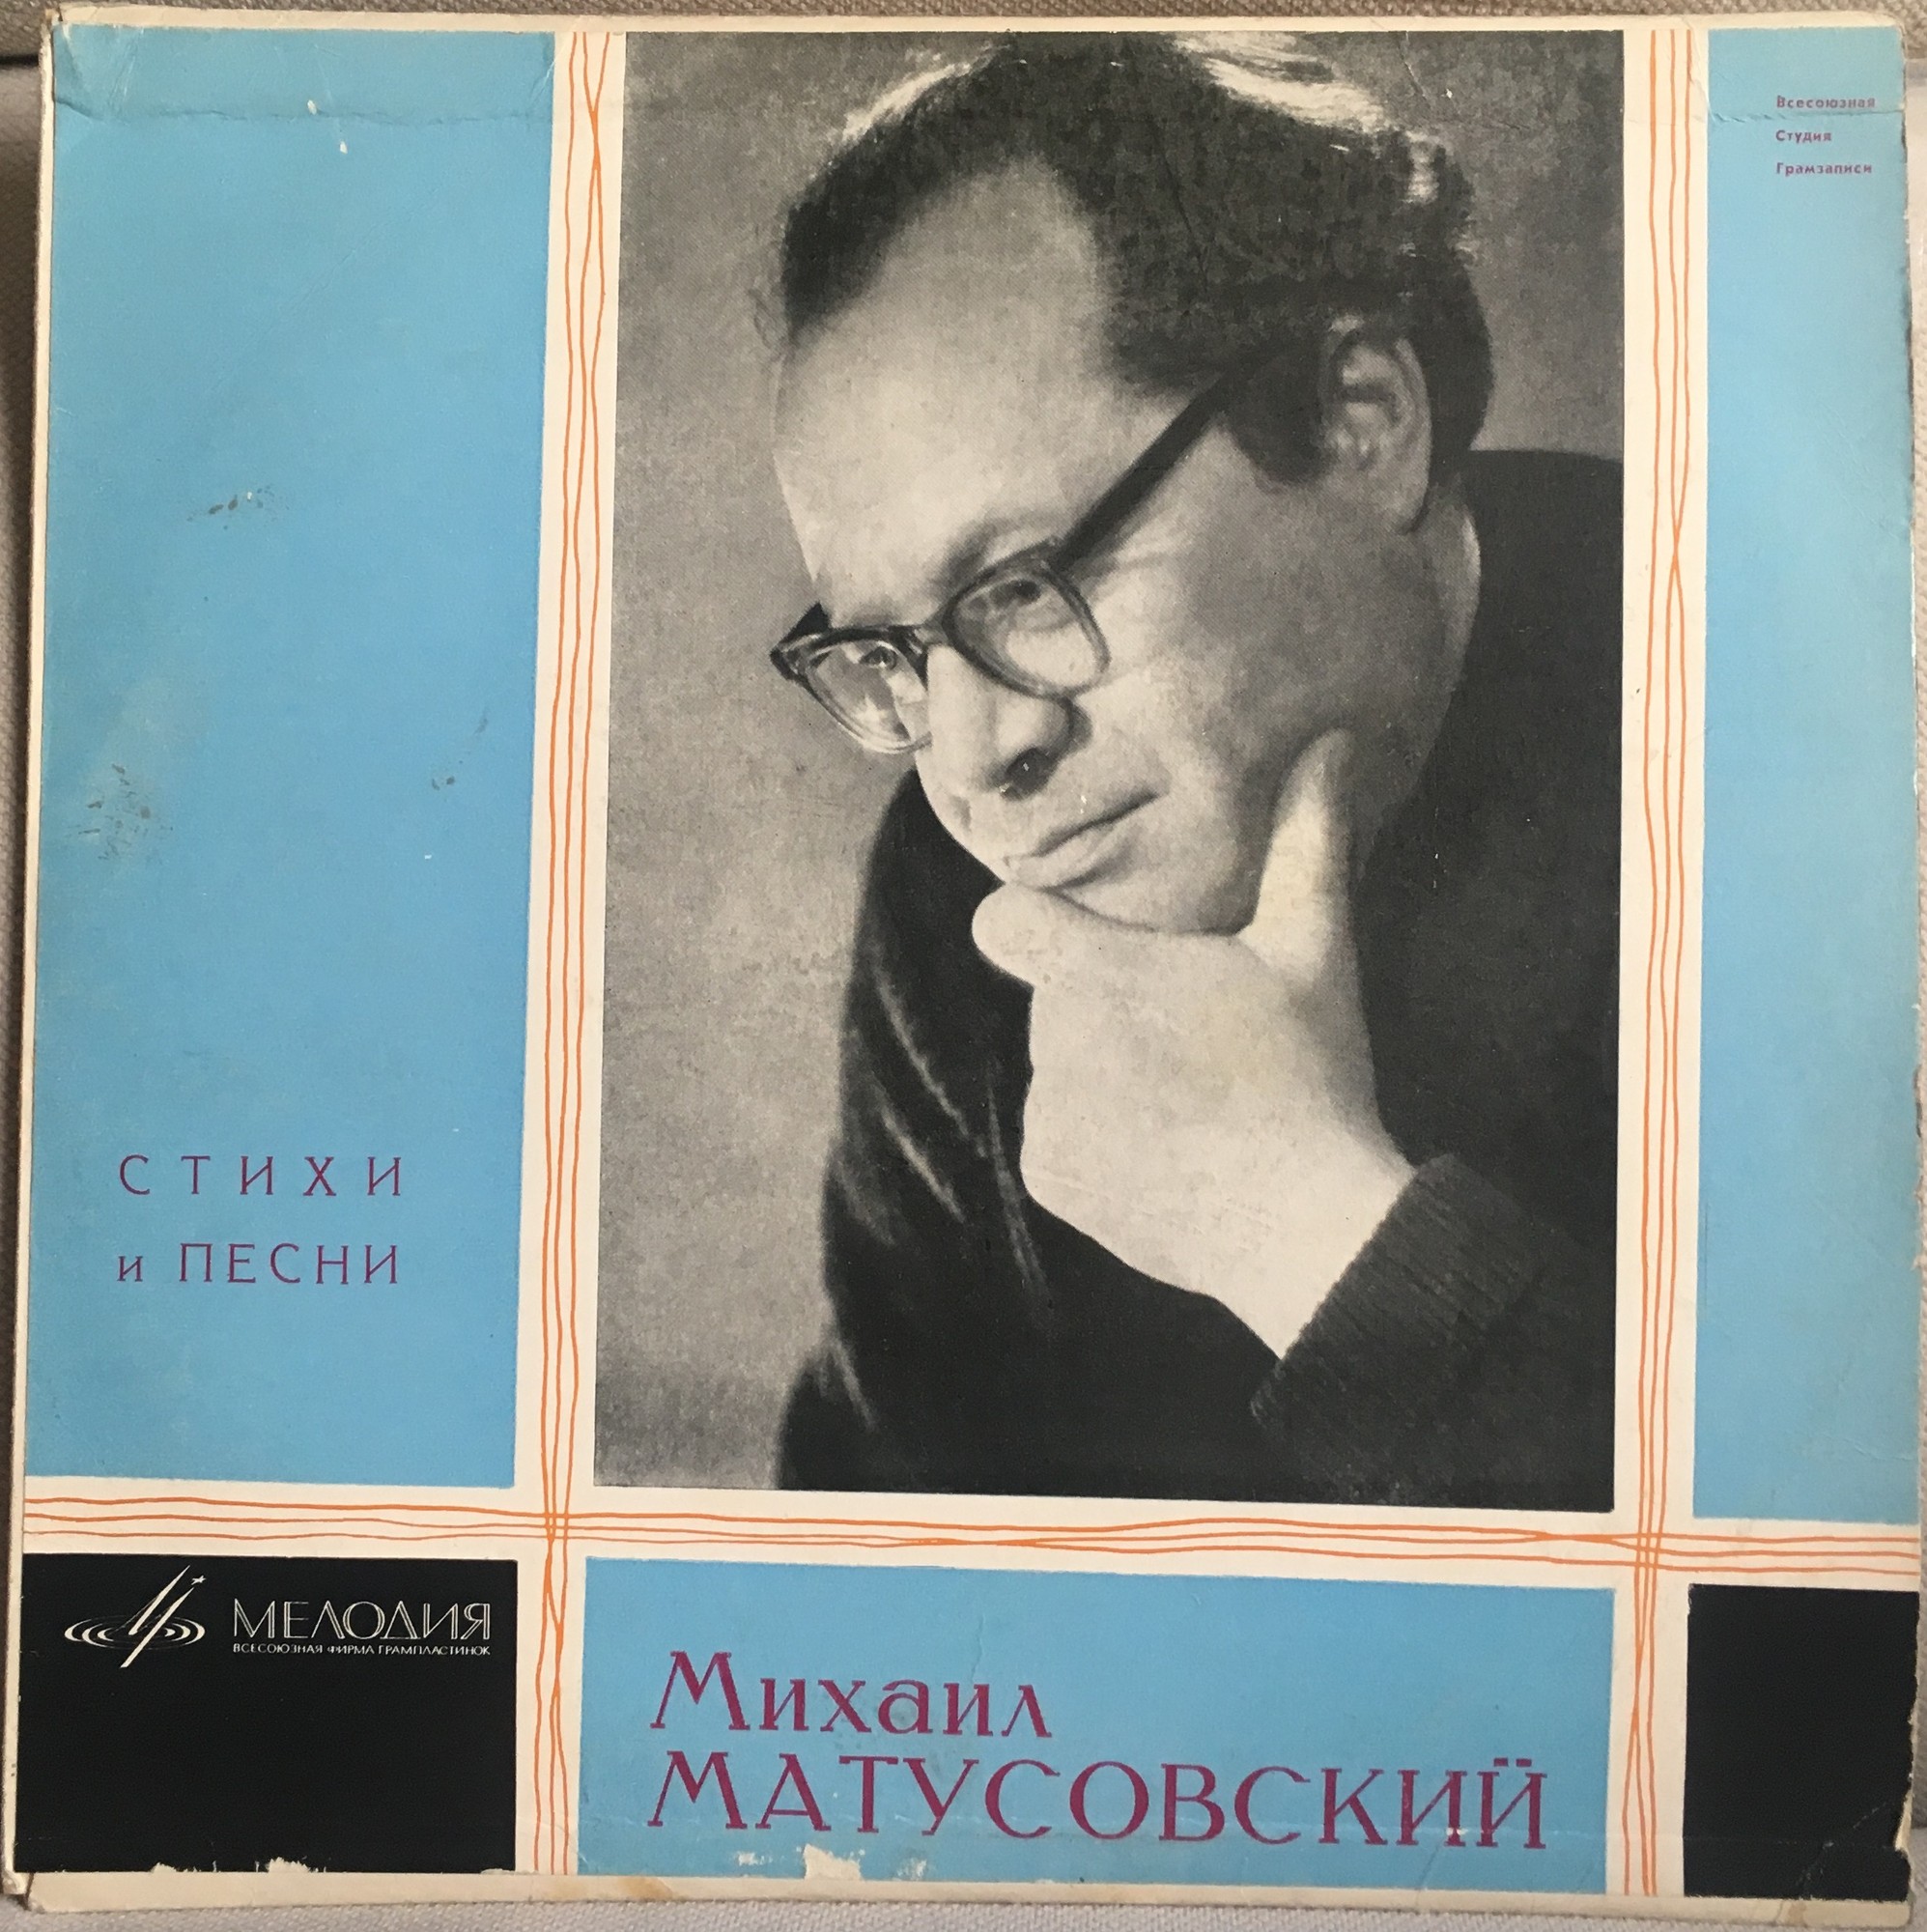 Михаил МАТУСОВСКИЙ (1915-1990): "Стихи и песни"